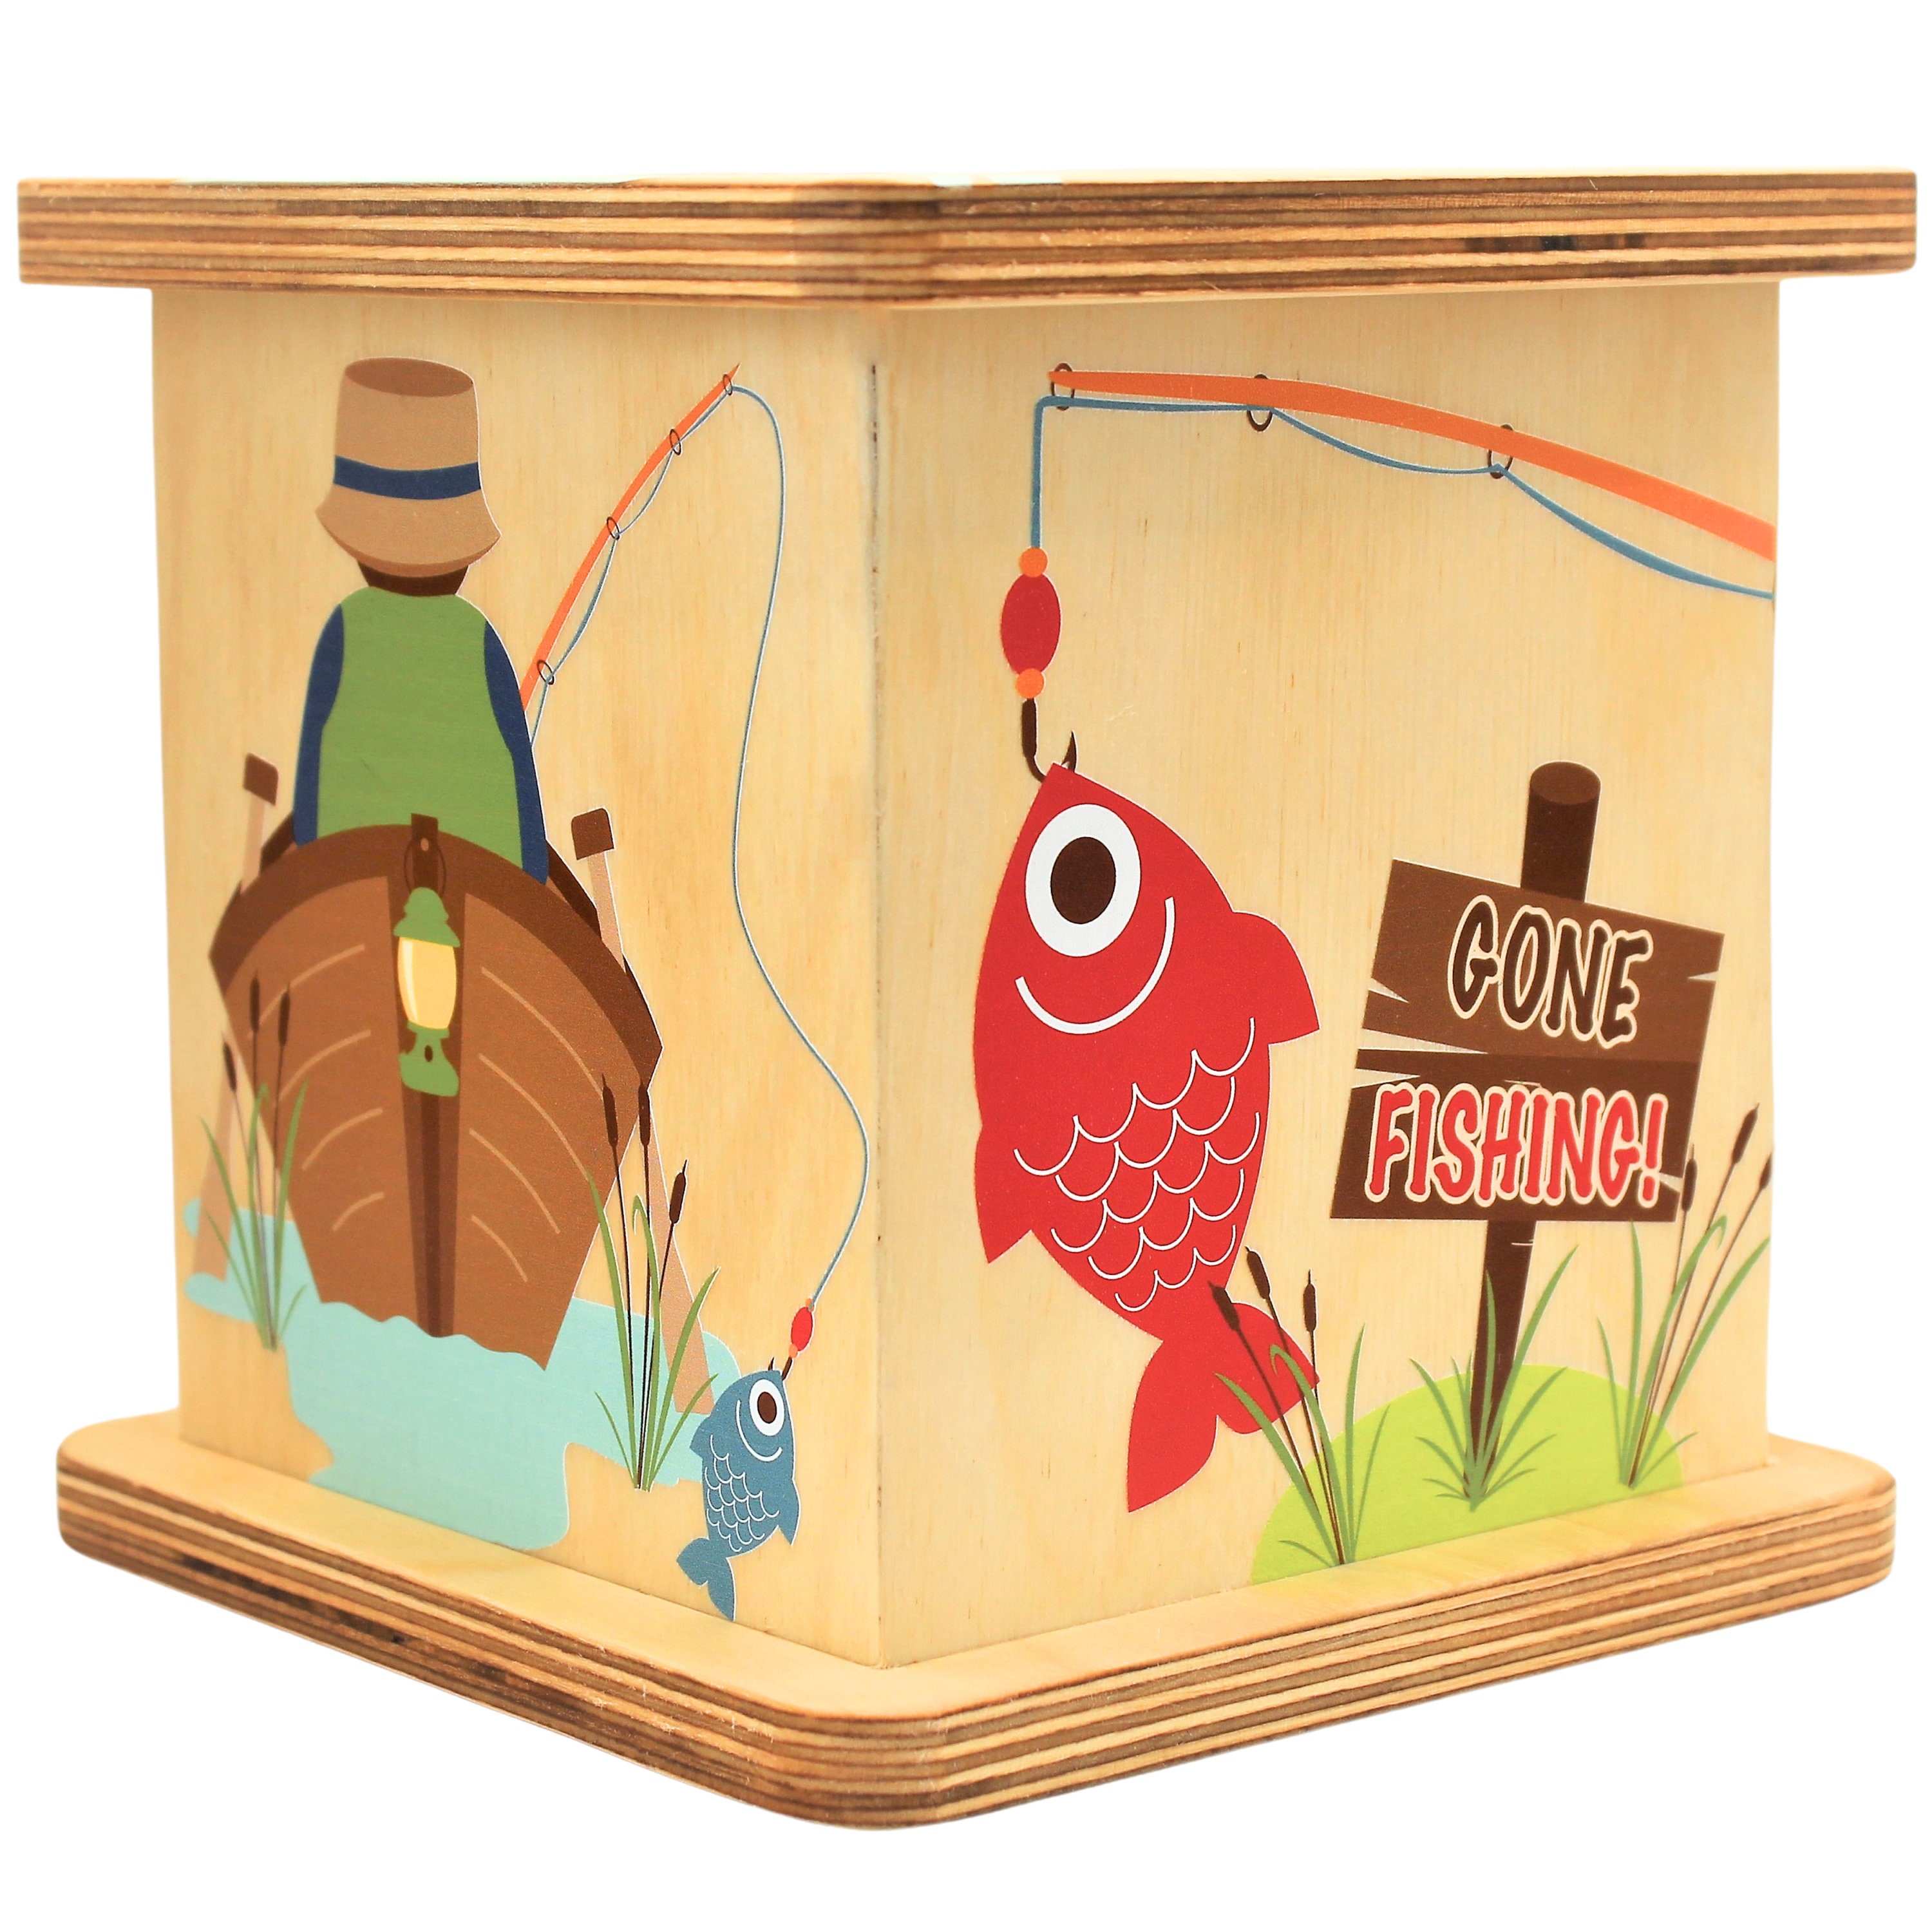 Fishing Themed Box 